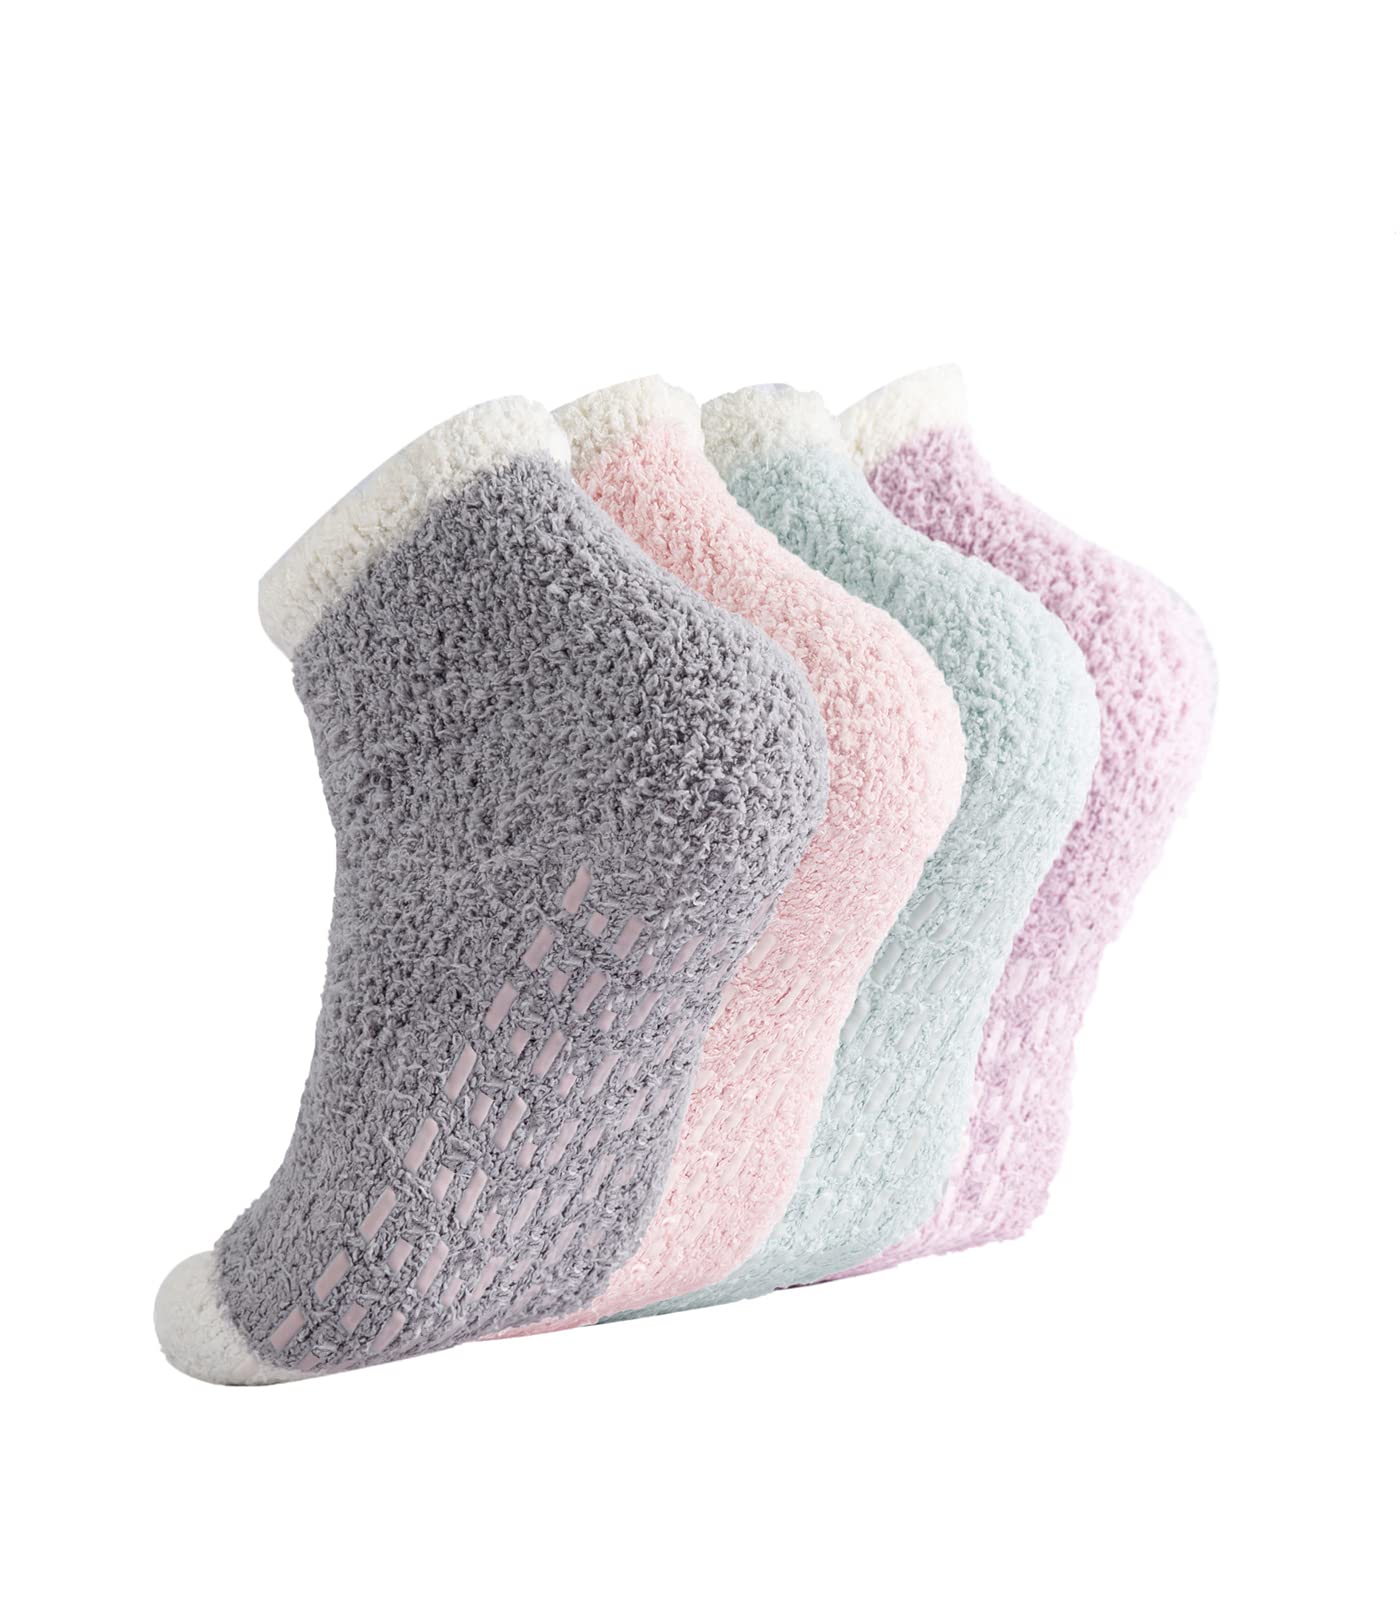 Non Slip Socks Hospital Socks with Grips for Women Grip Socks for